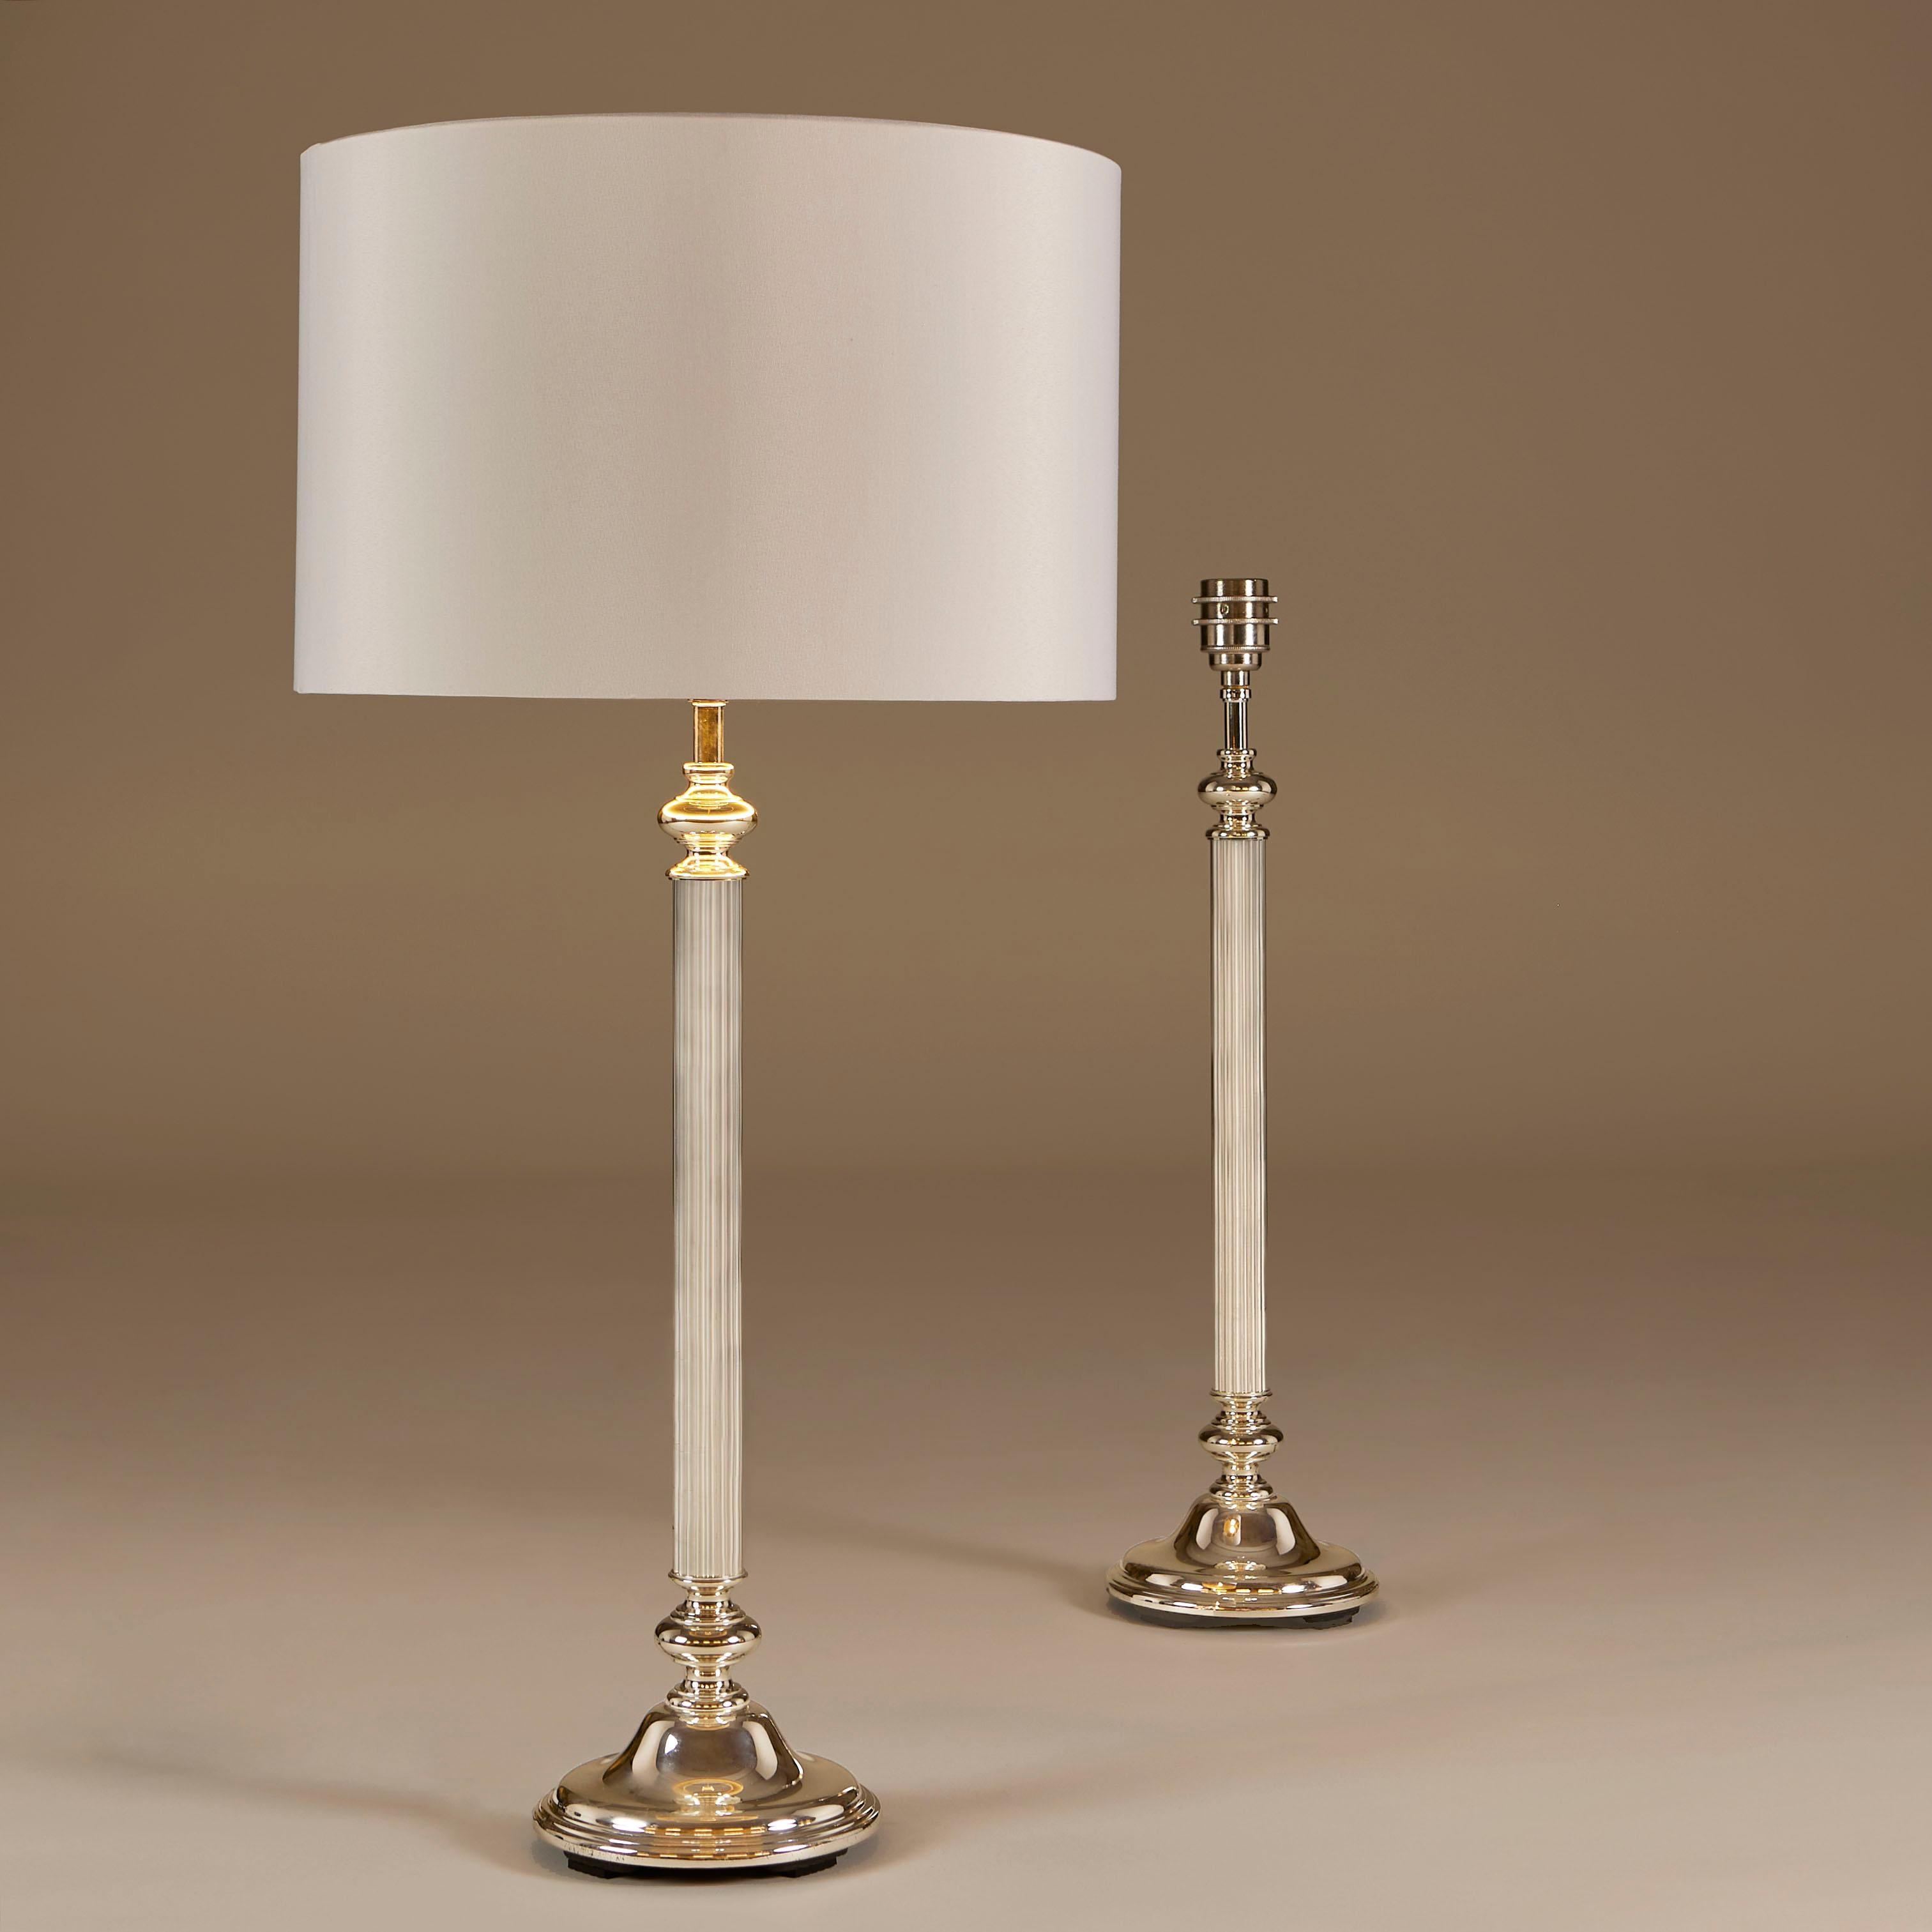 Praktisches und schickes Paar verchromter Tischlampen mit dekorativ geschwungenem Sockel und fein geripptem Stiel.
Lampenschirme sind optional.